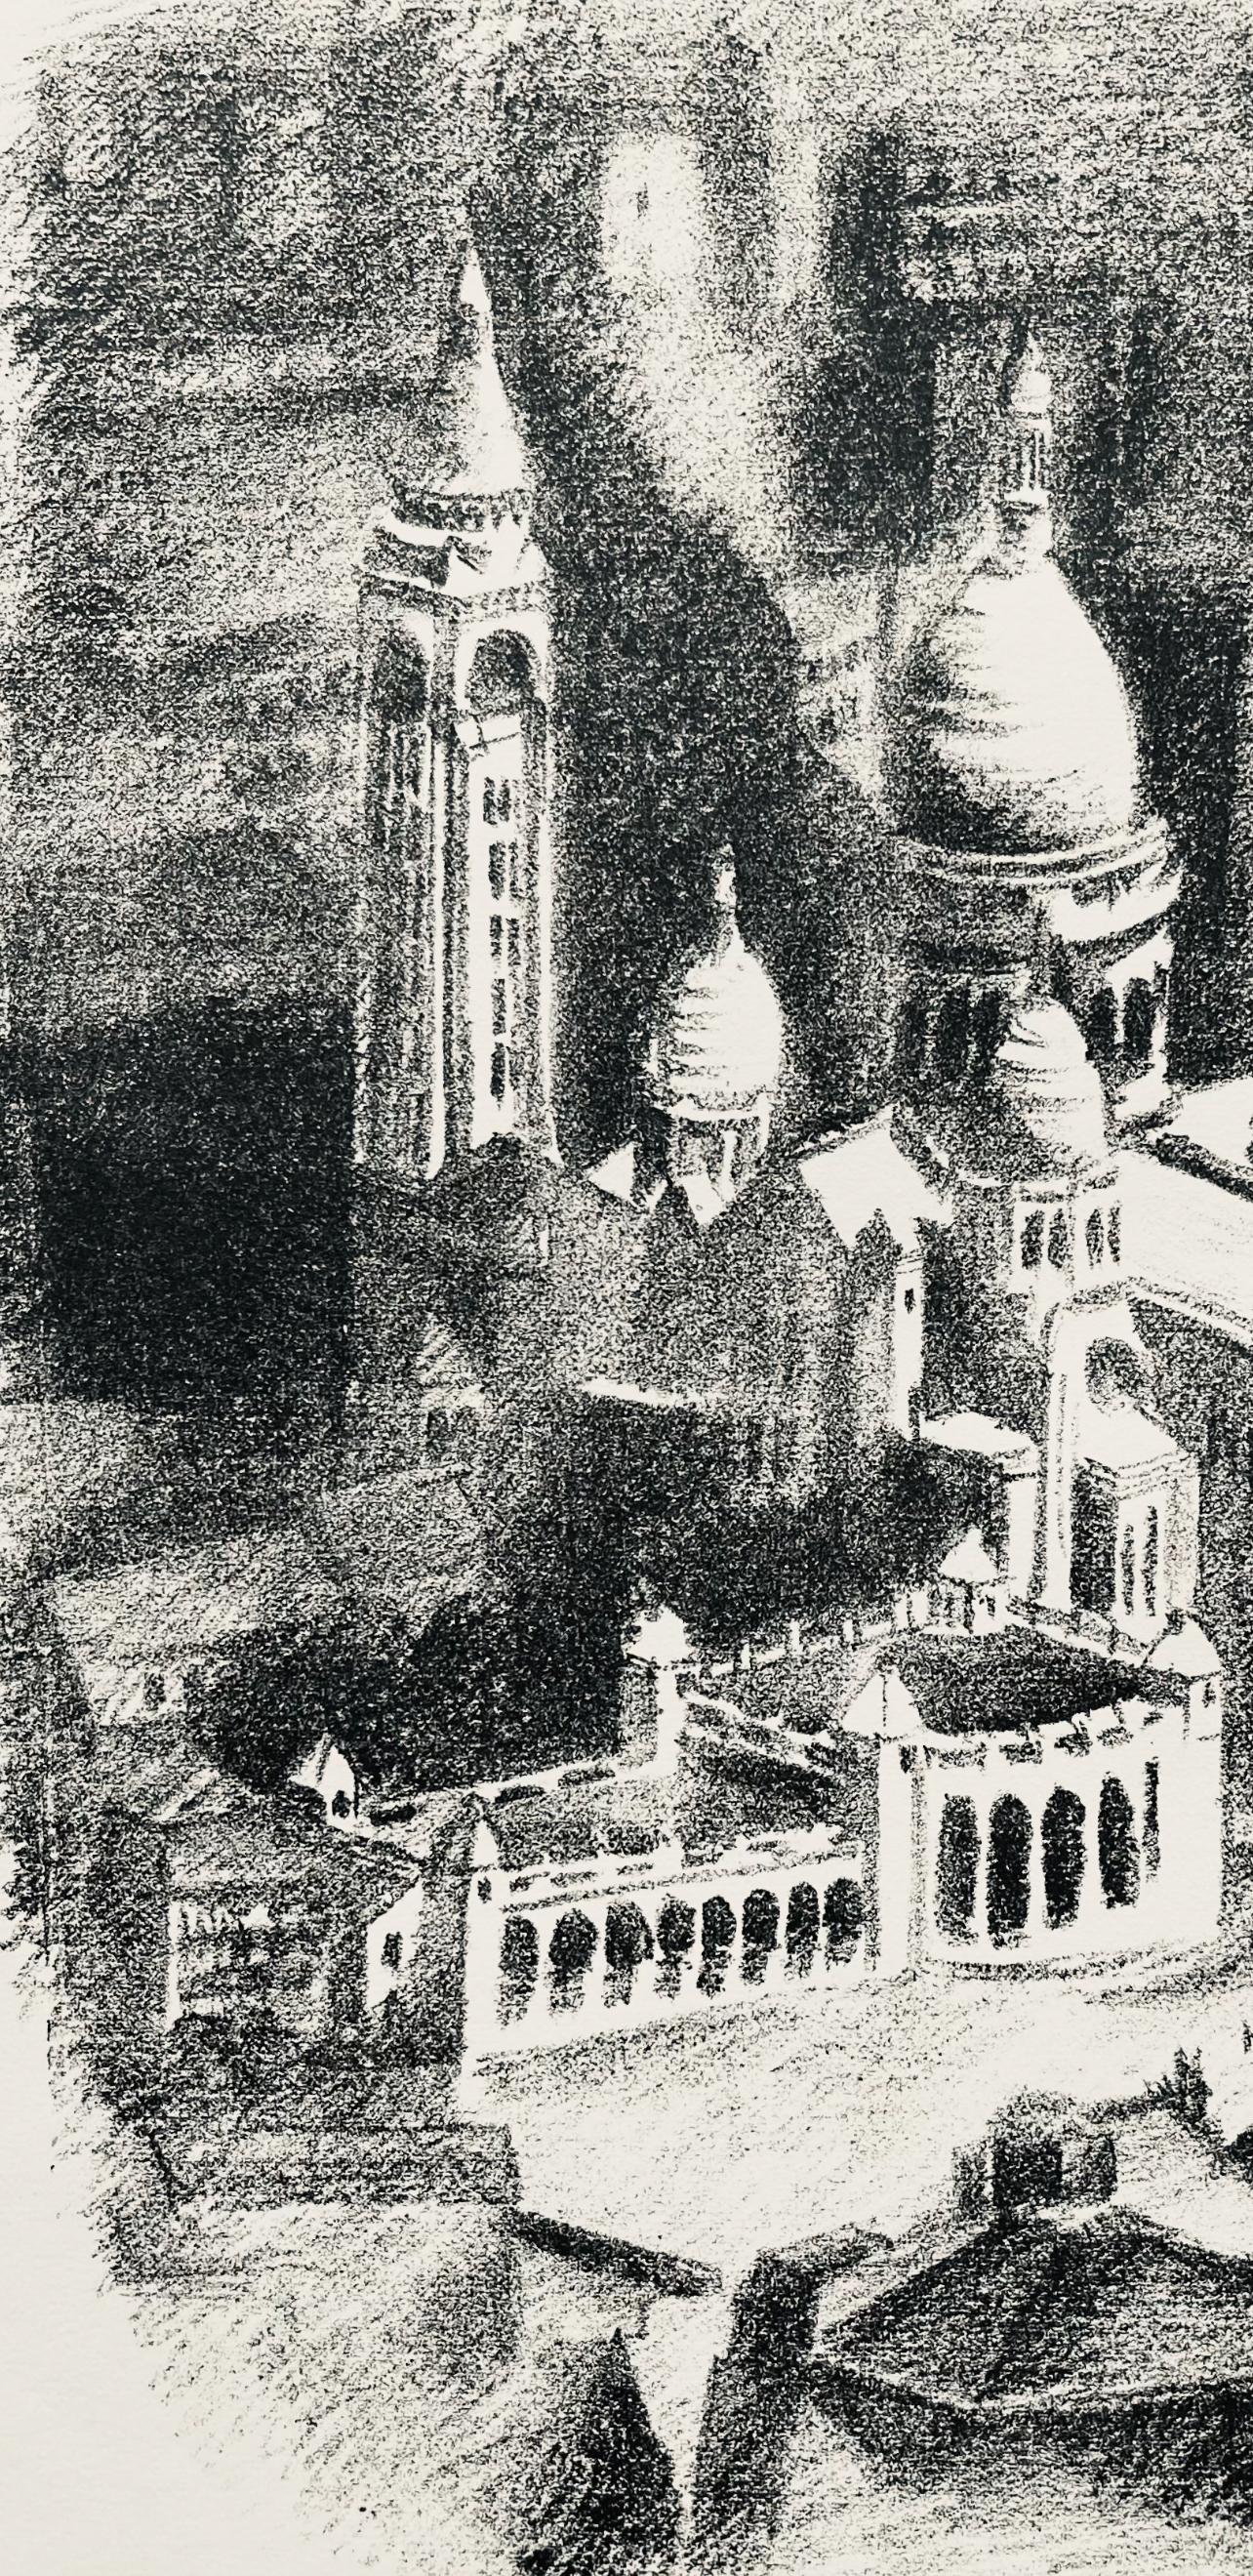 Delaunay, Le Sacré-Cœur (Habasque 720-728), Allo! Paris! (after) - Modern Print by Robert Delaunay